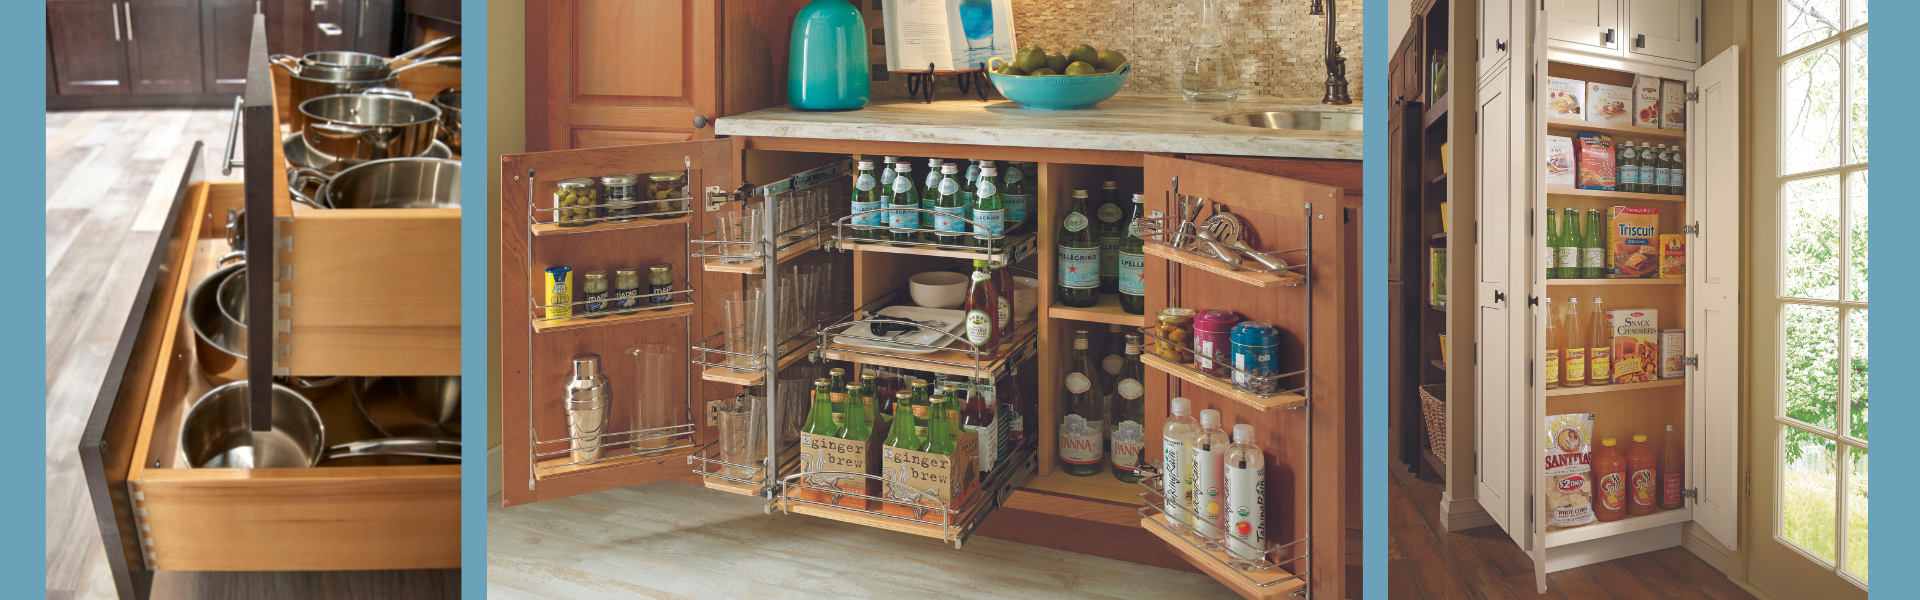 Kitchen cabinet built-in storage ideas